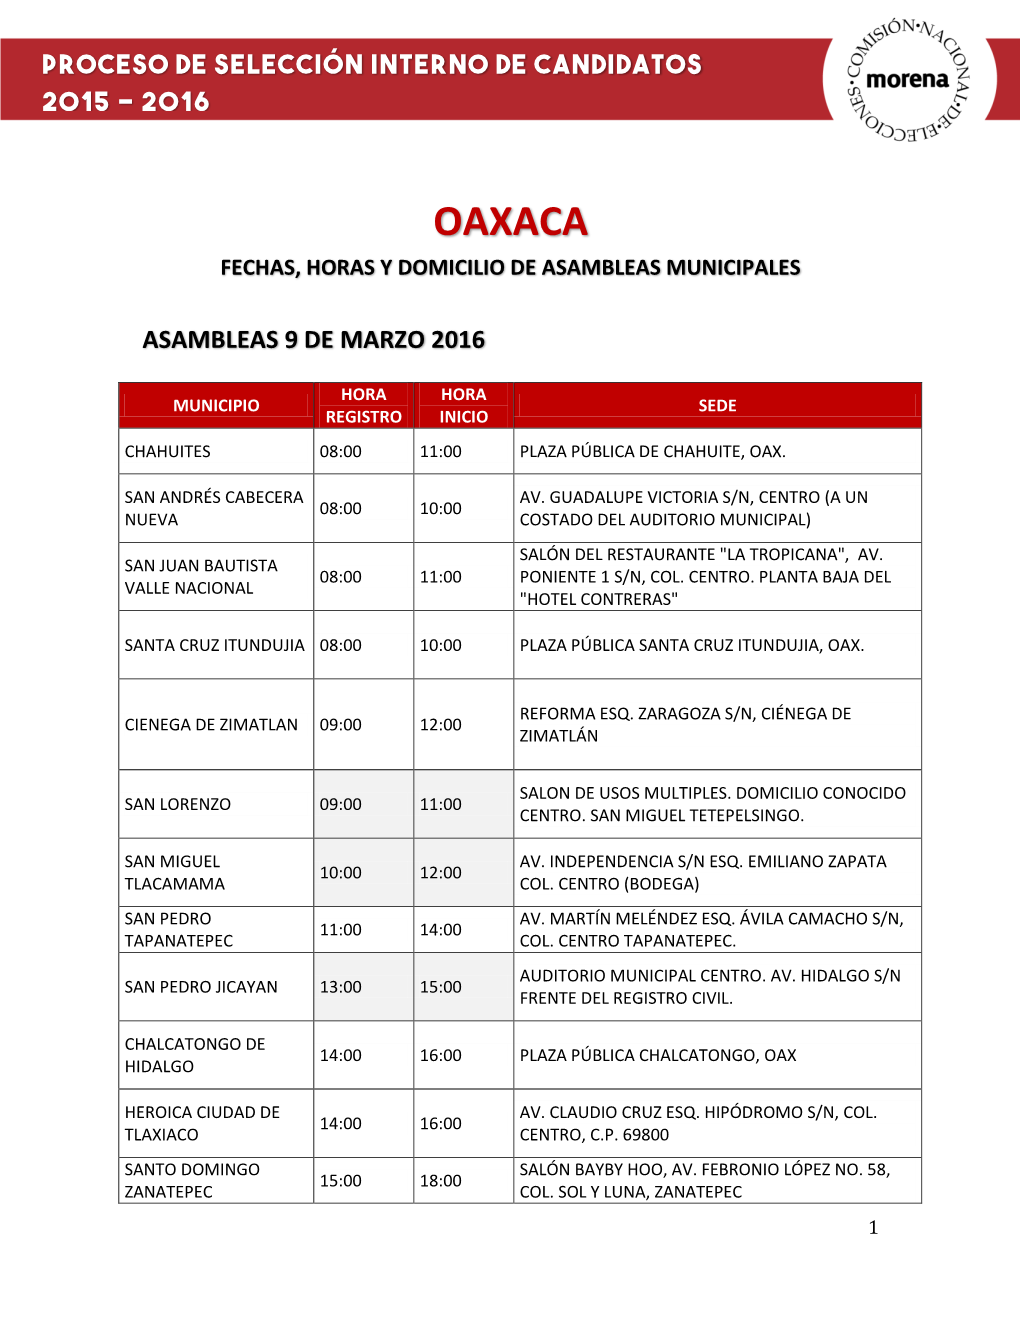 Oaxaca Fechas, Horas Y Domicilio De Asambleas Municipales